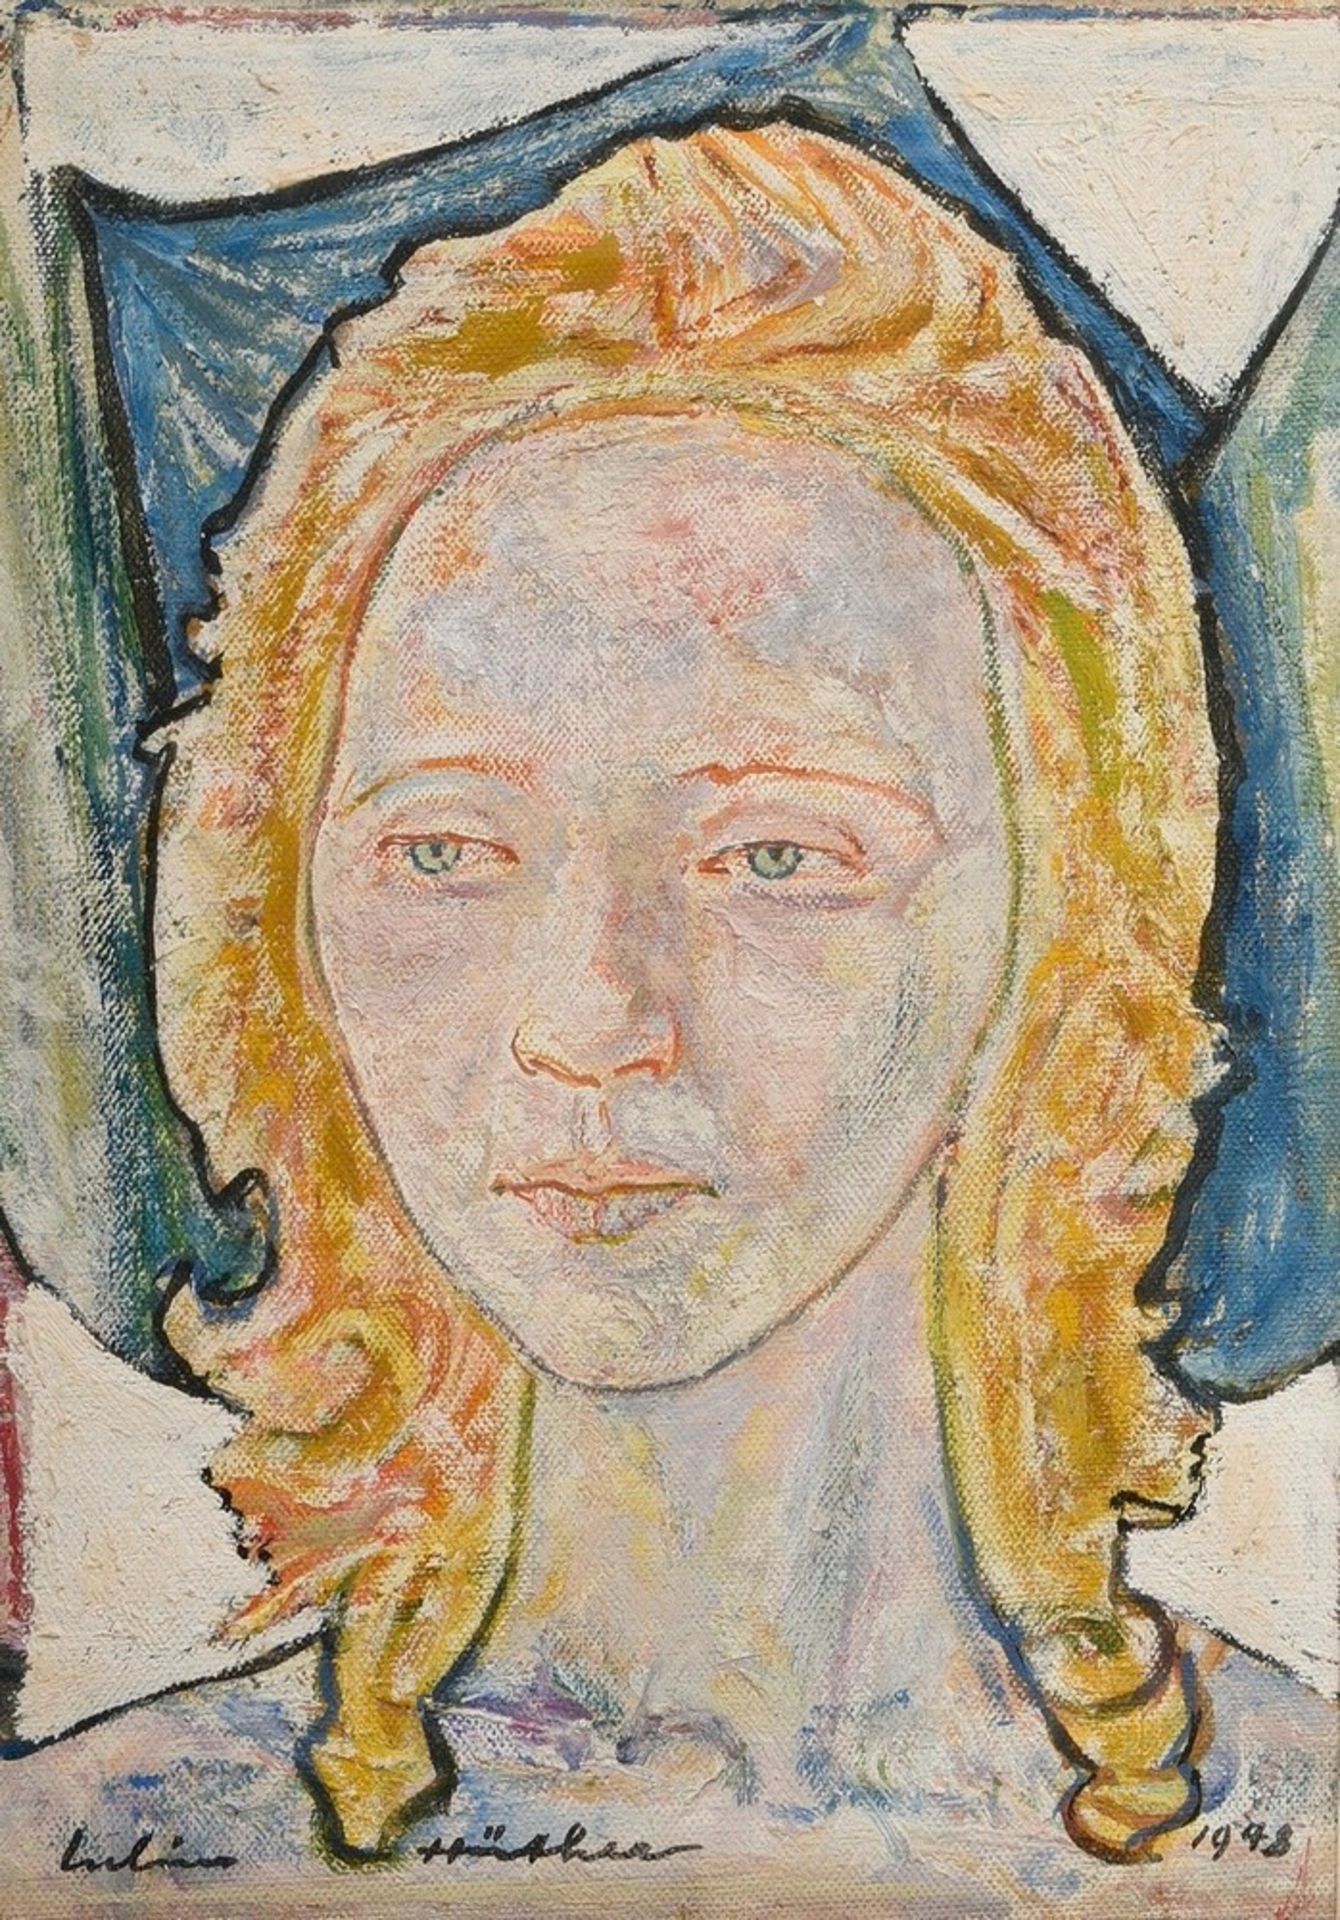 Hüther, Julius (1881-1954) "Portrait of a woman" 1948, oil/canvas, sign./dat. below, 37x26.5cm (w.f